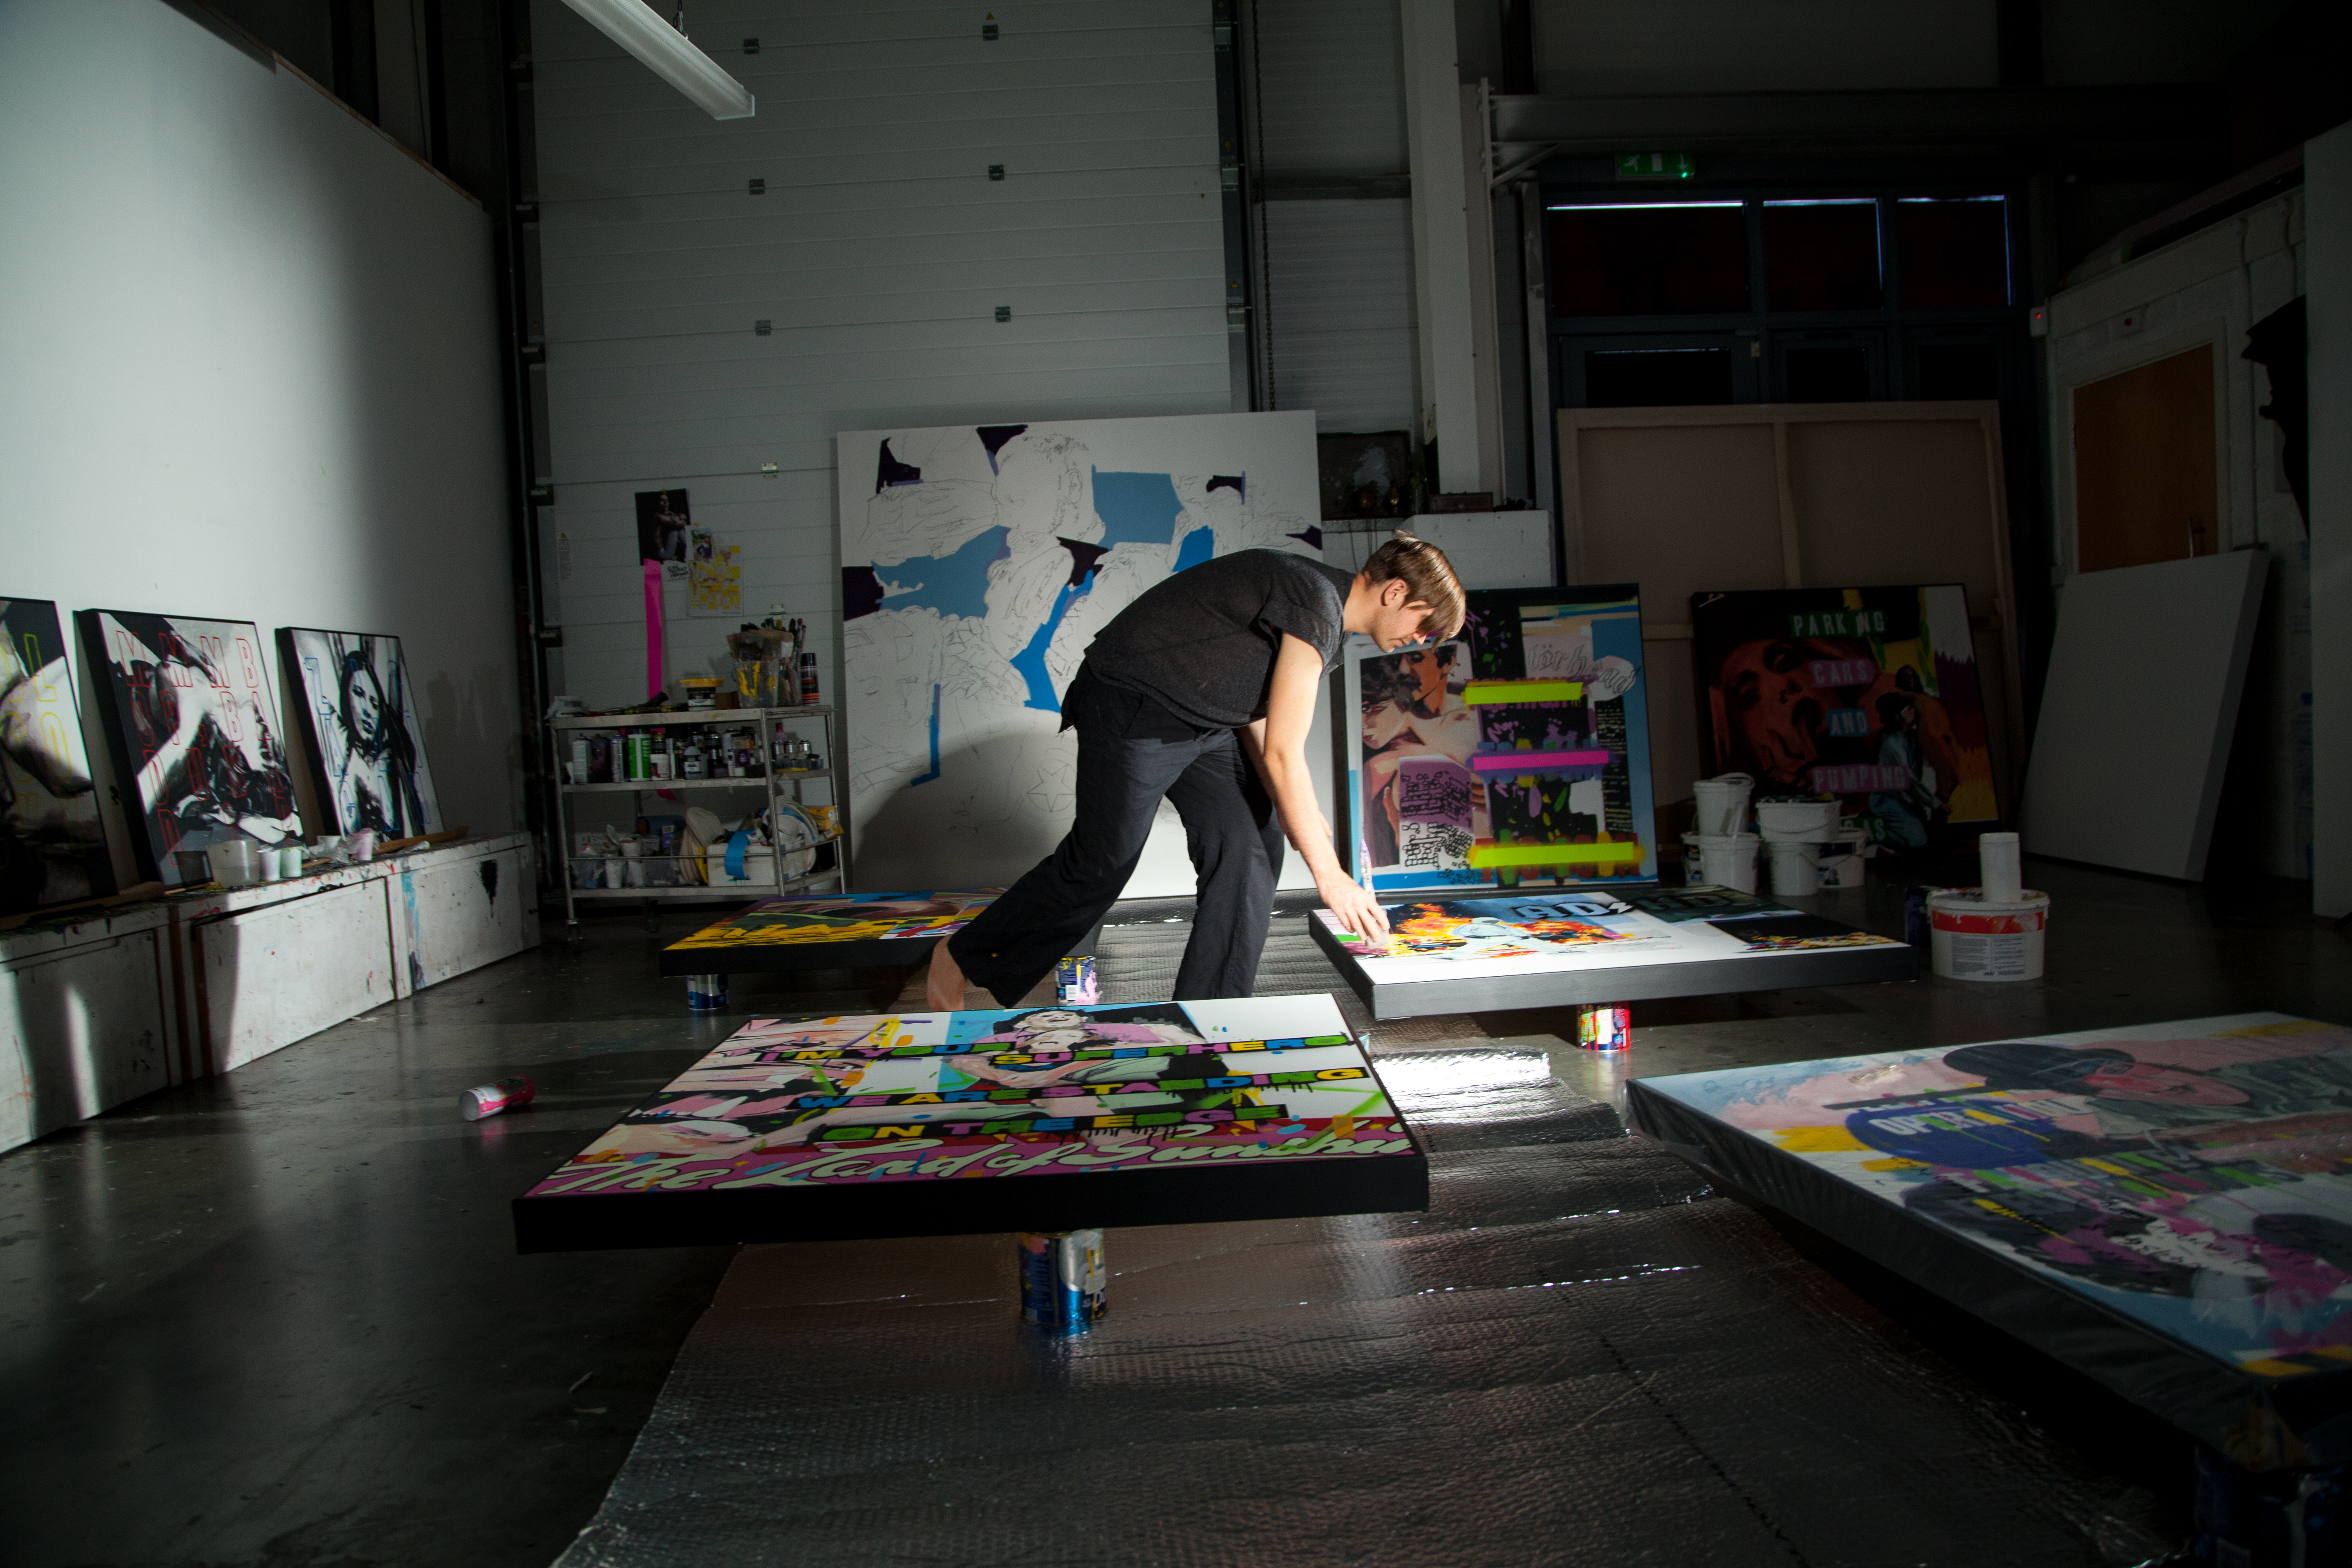 Stuart Semple paints a canvas barefoot in a studio space